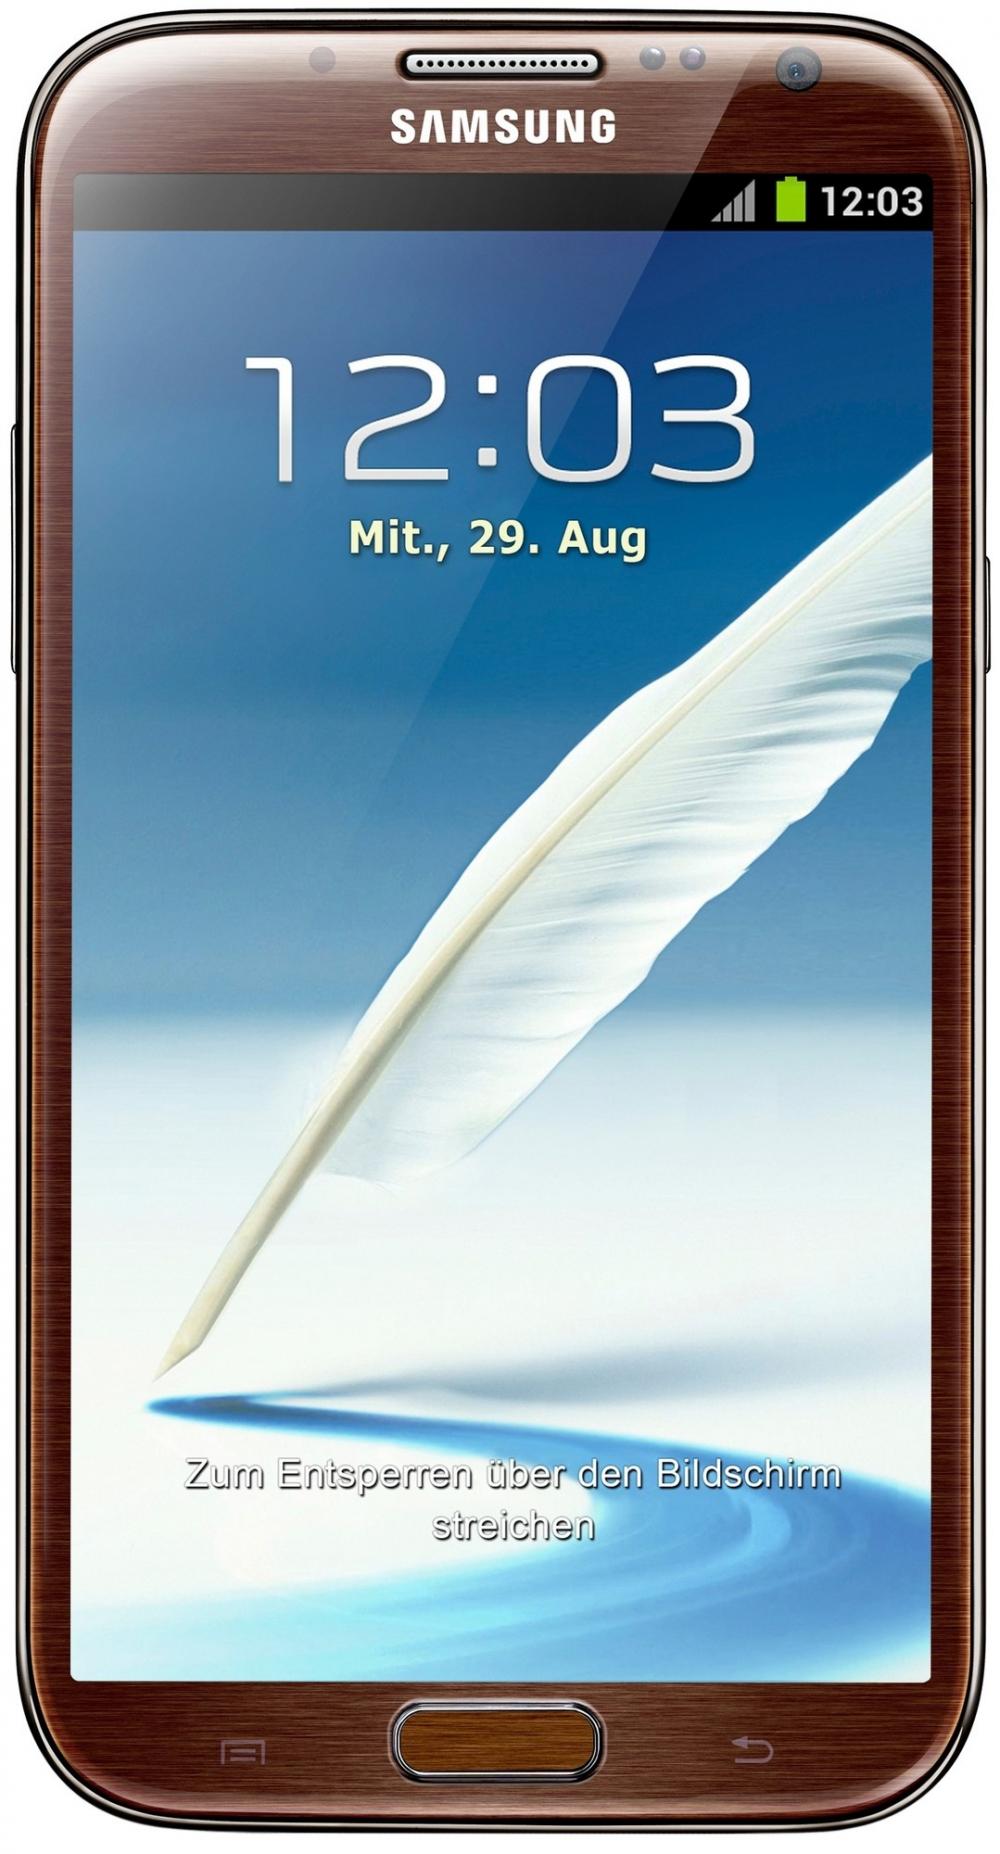 Samsung N7100 Galaxy Note II (Amber Brown)